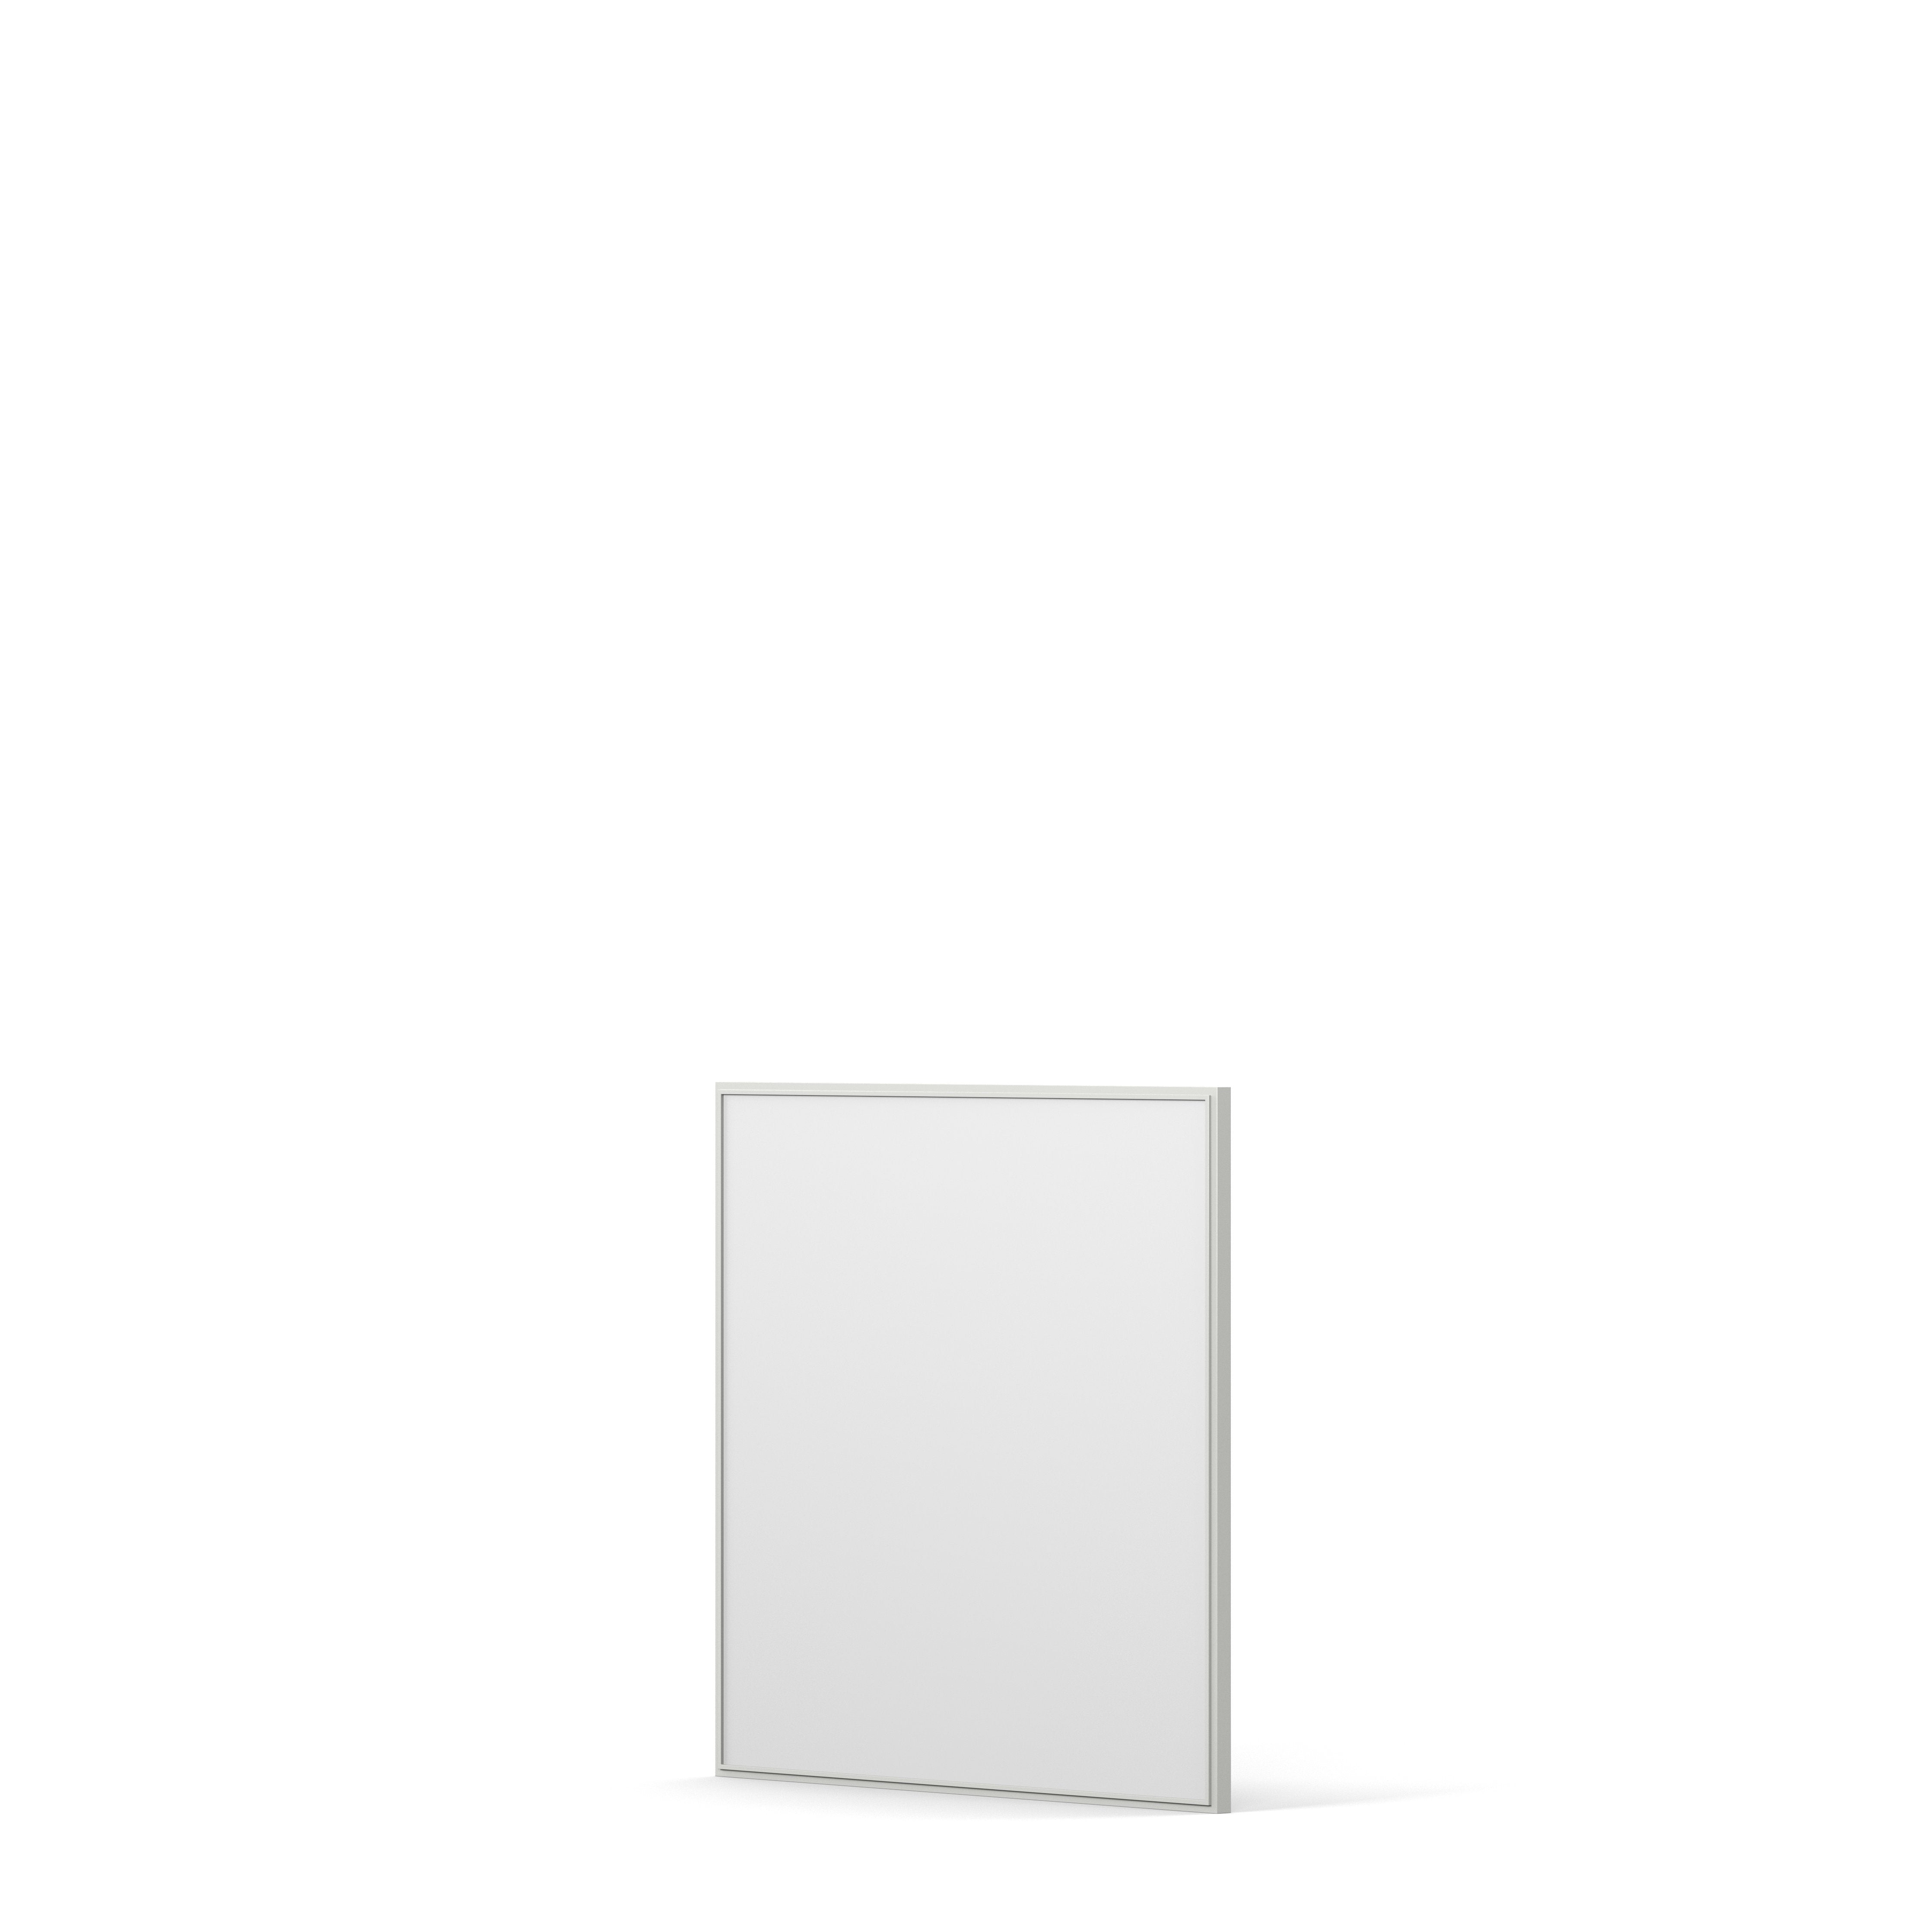 Englesson Speglar Cube Spegel Kvadratisk #Variant_Edge White 